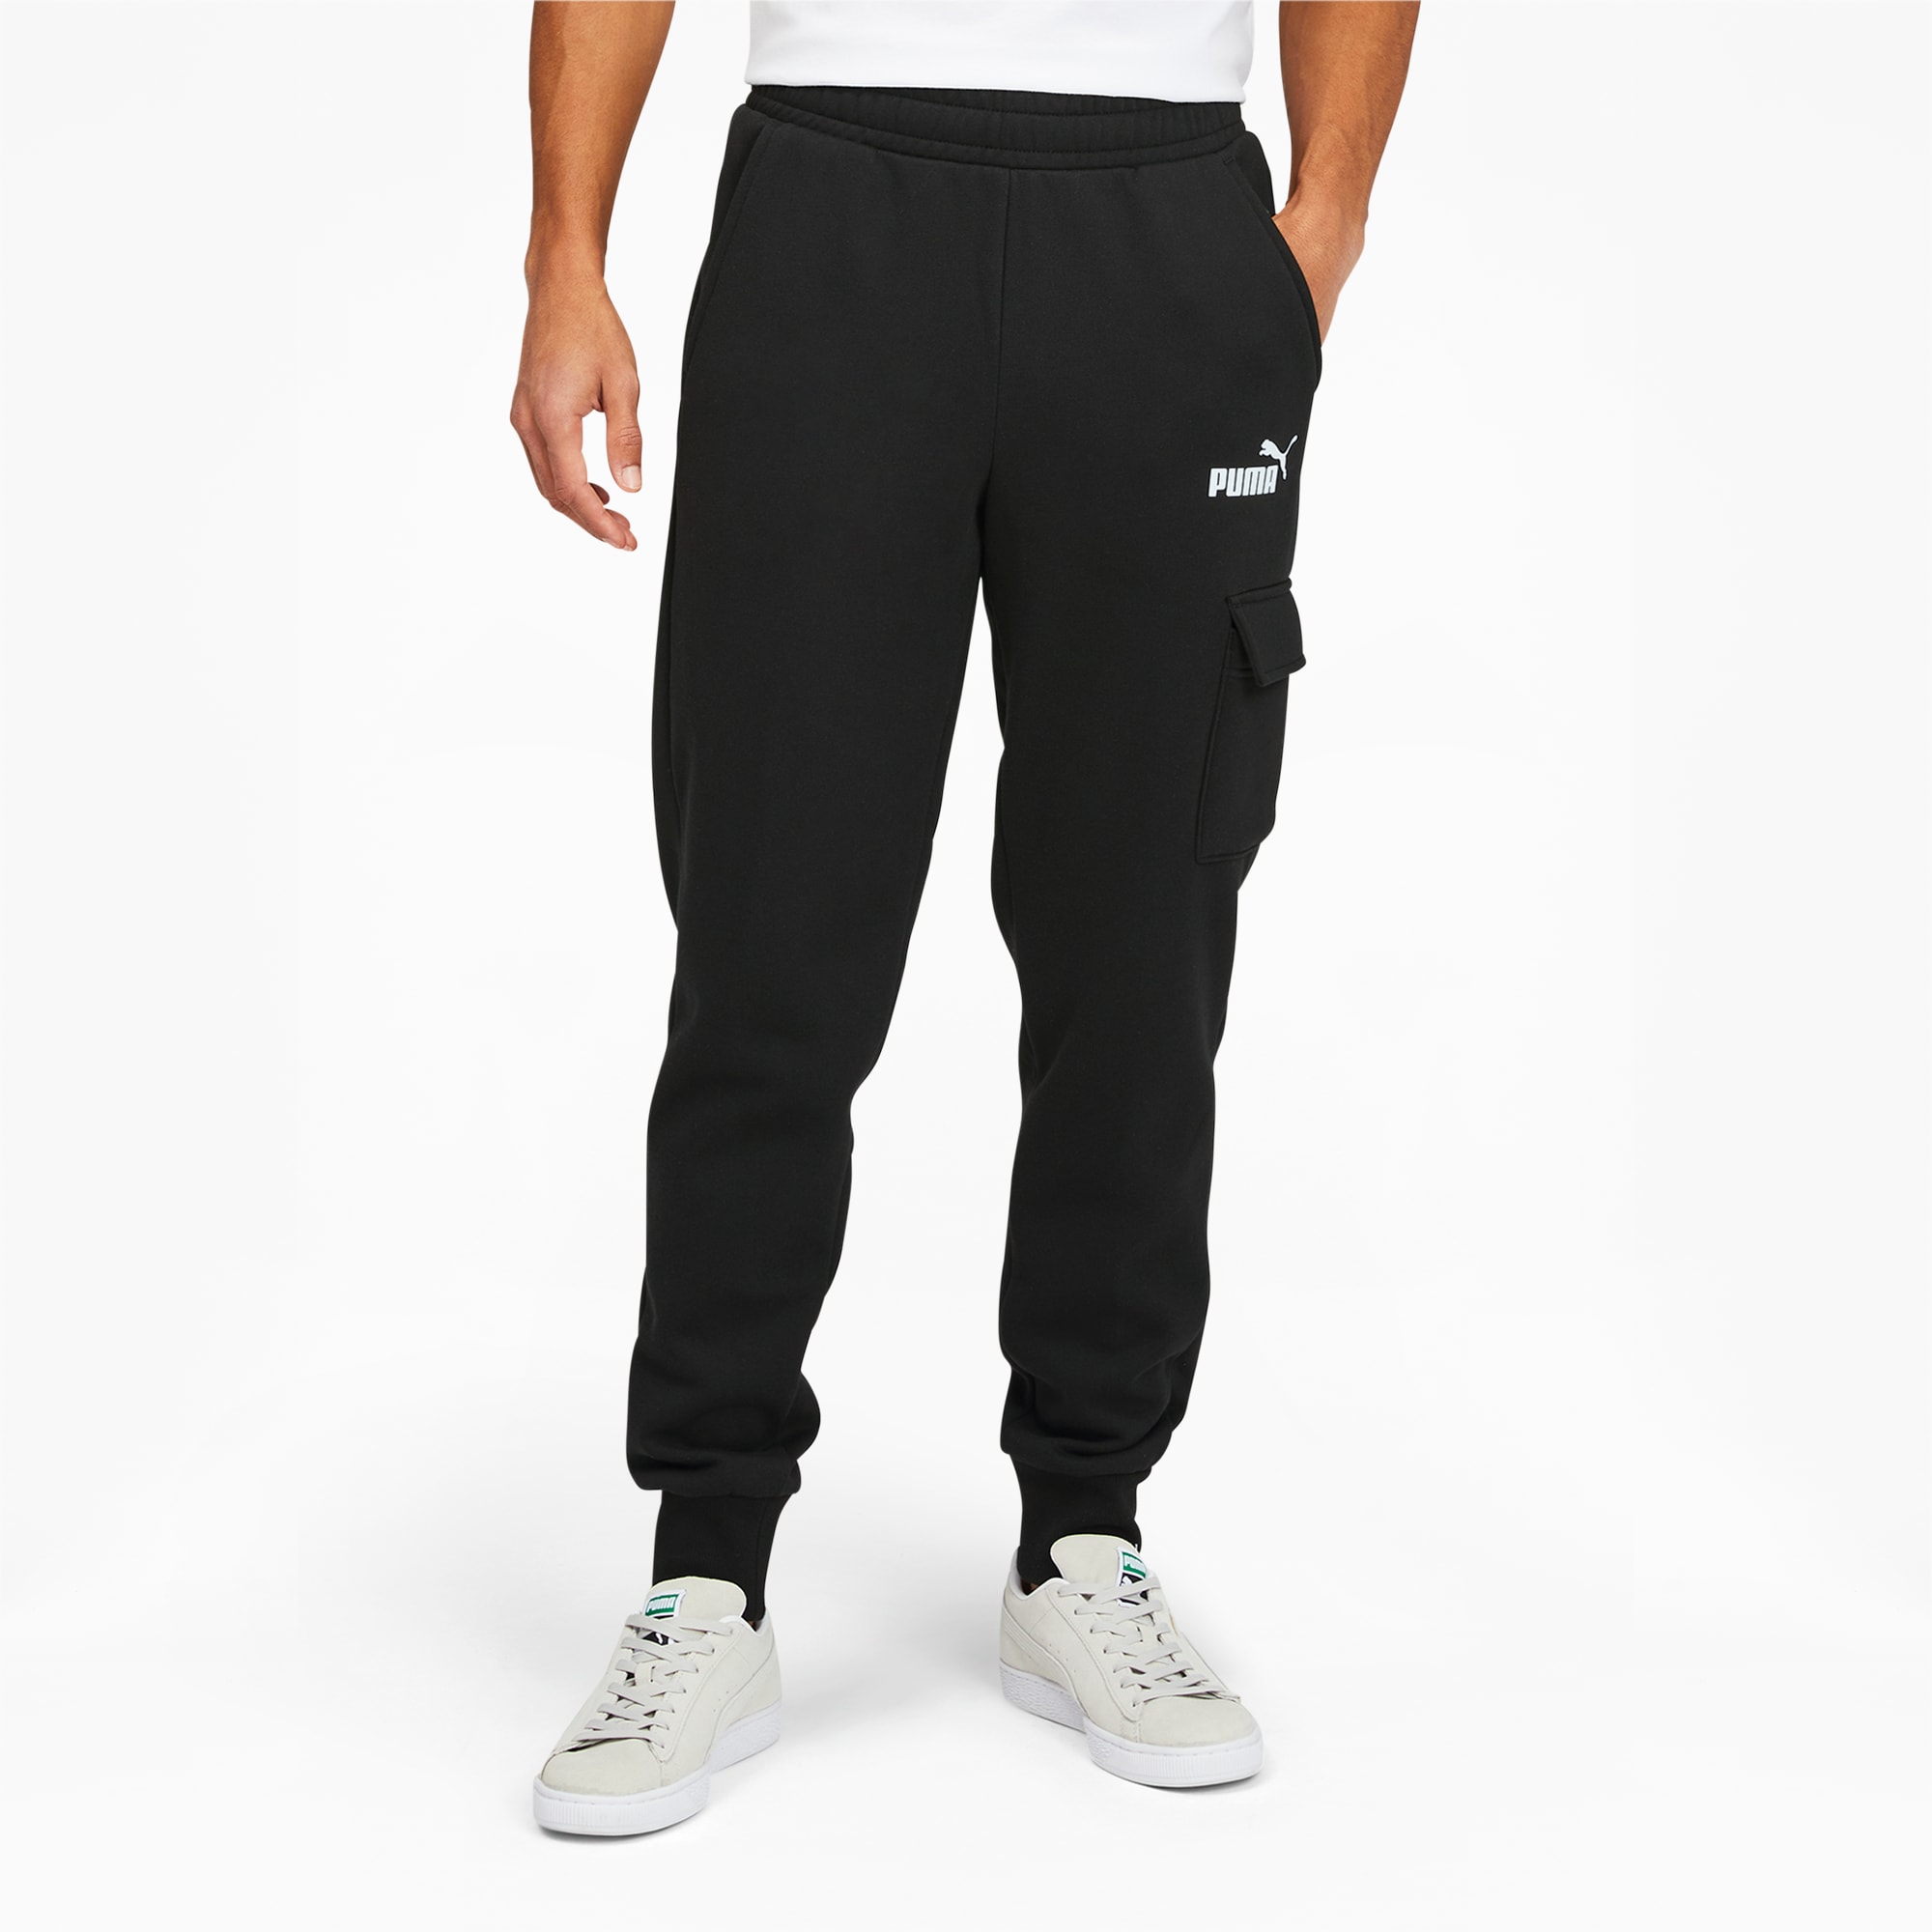 Nike Men's Heritage Pant - White Small / White